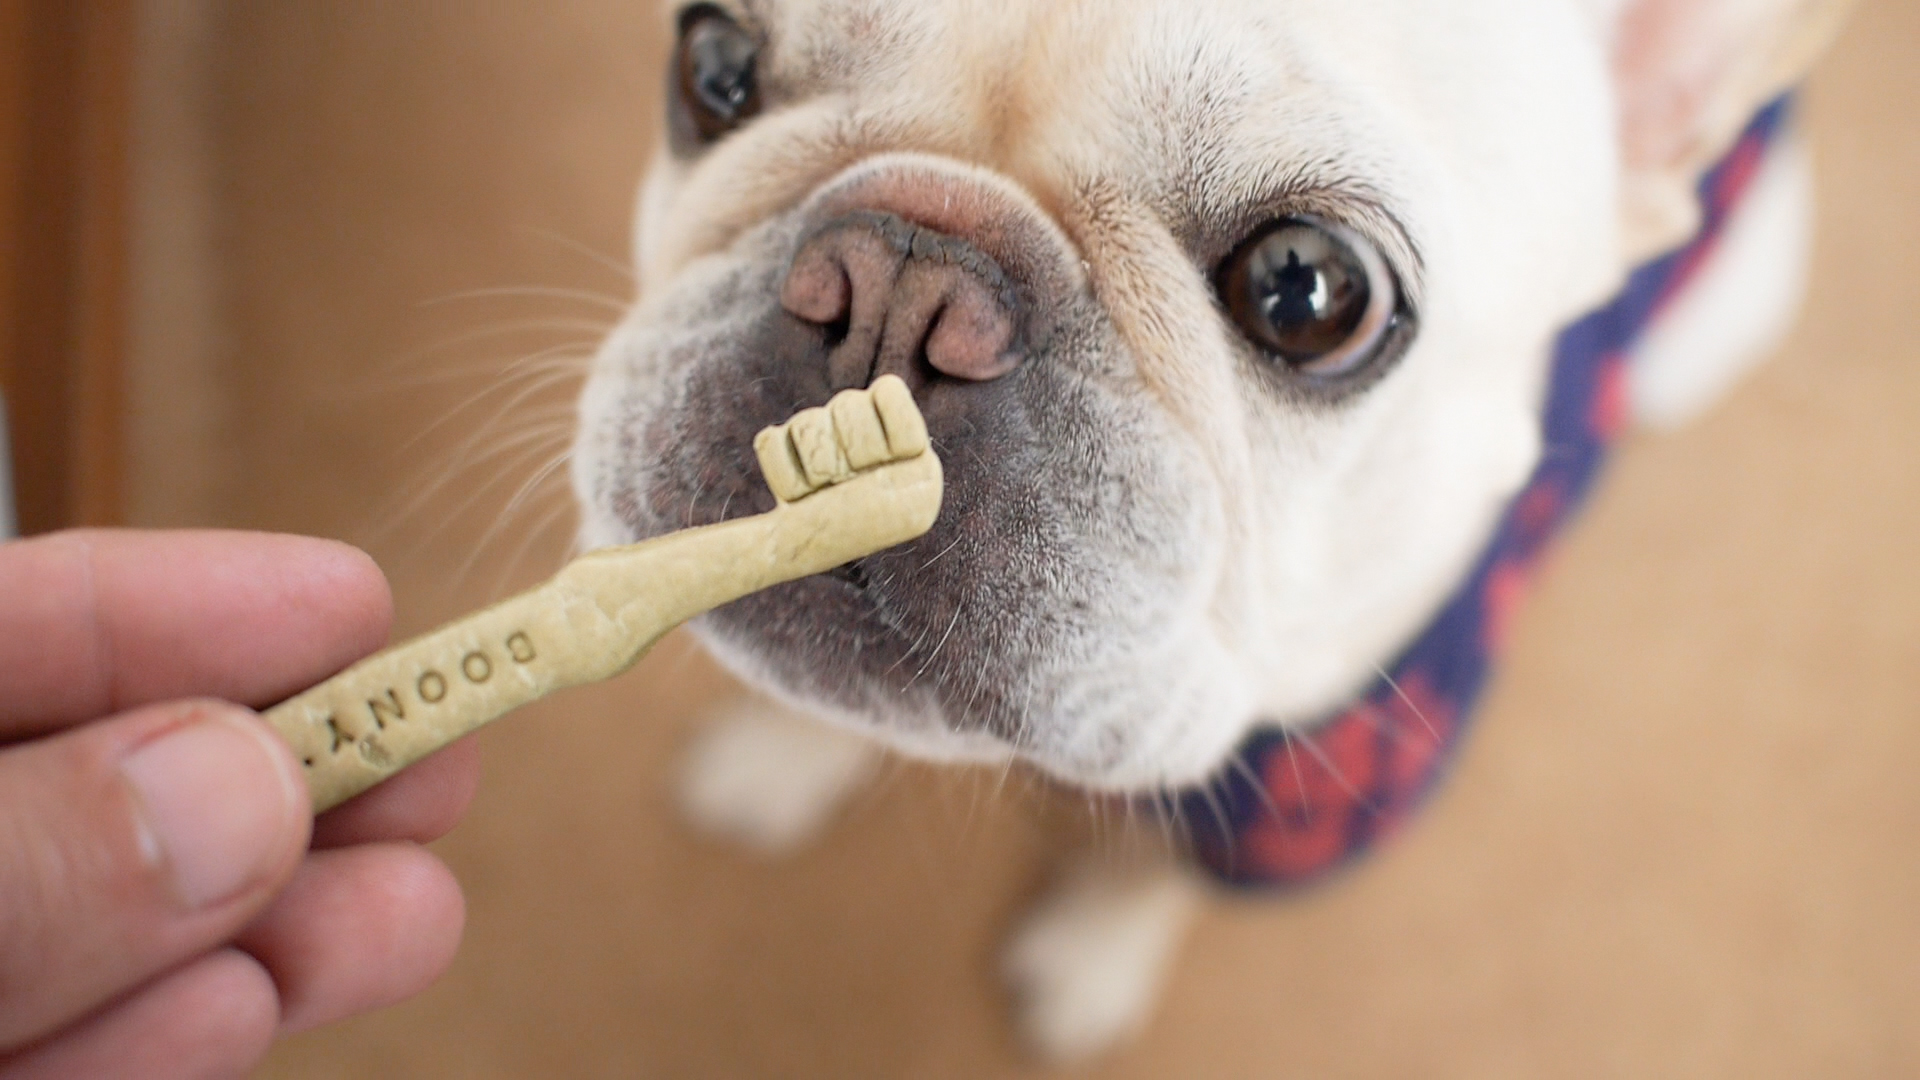 インスタで人気の犬のおやつboony Sクッキー初購入 うめのみブログ